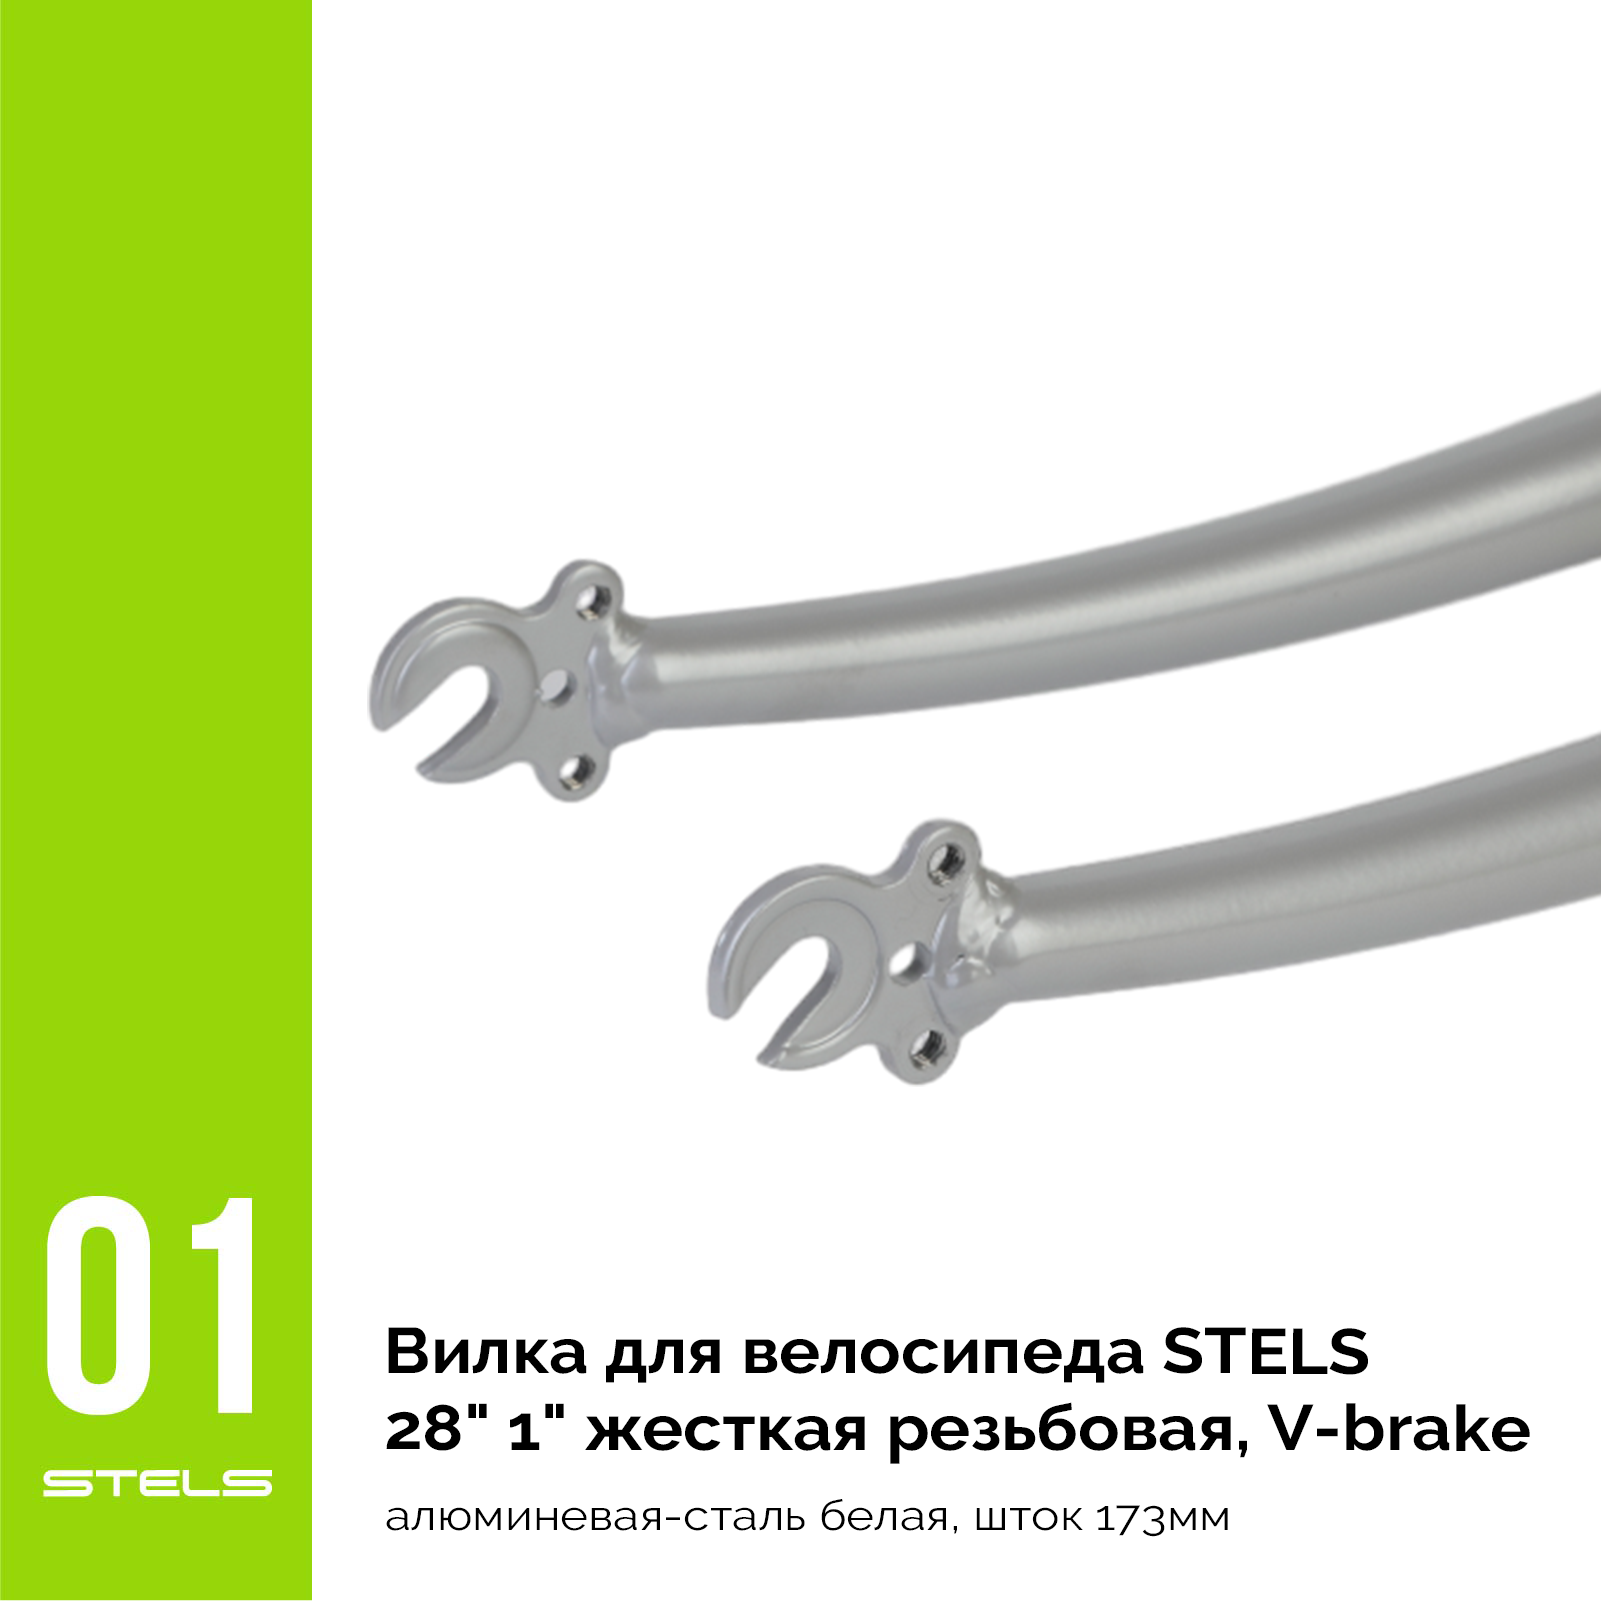 Вилка для велосипеда STELS 28" 1" жесткая резьбовая, V-brake, стальная серебристо-серая, шток 165мм NEW